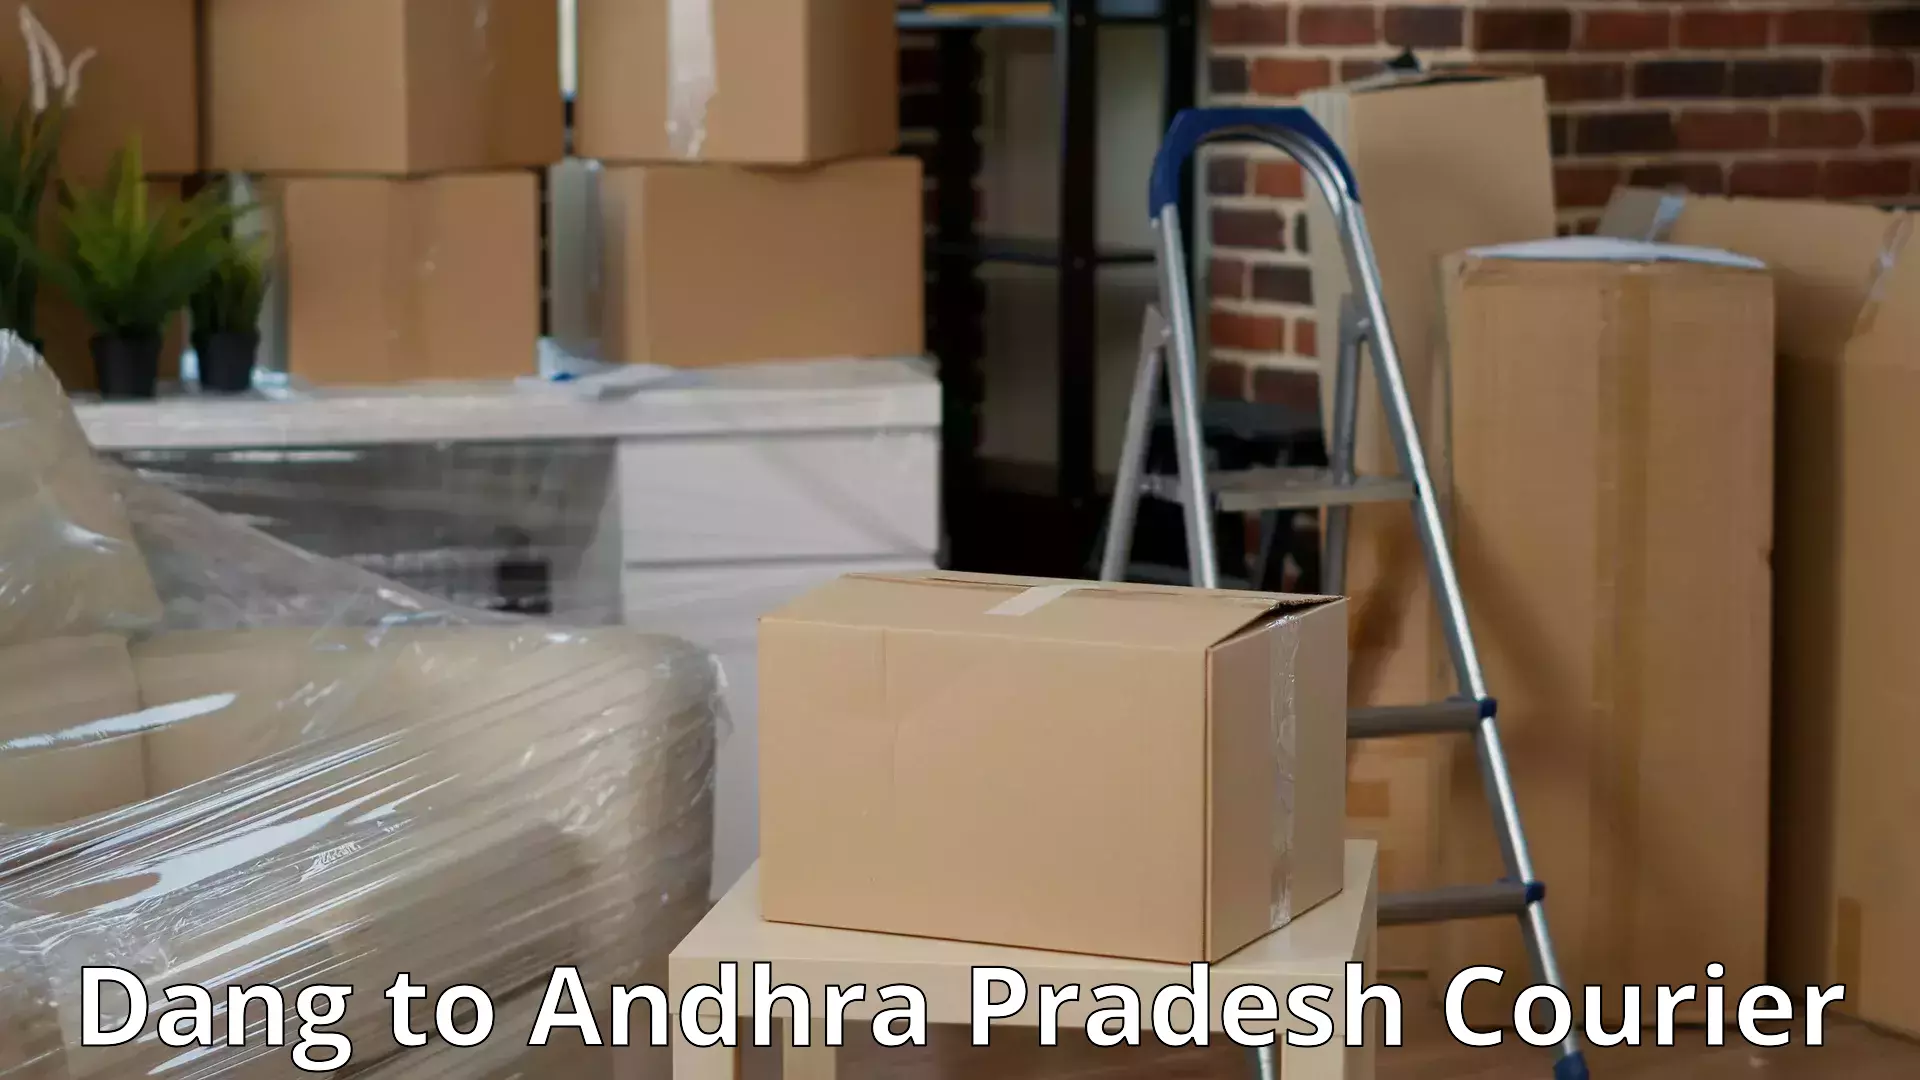 Full-service furniture transport Dang to Andhra Pradesh